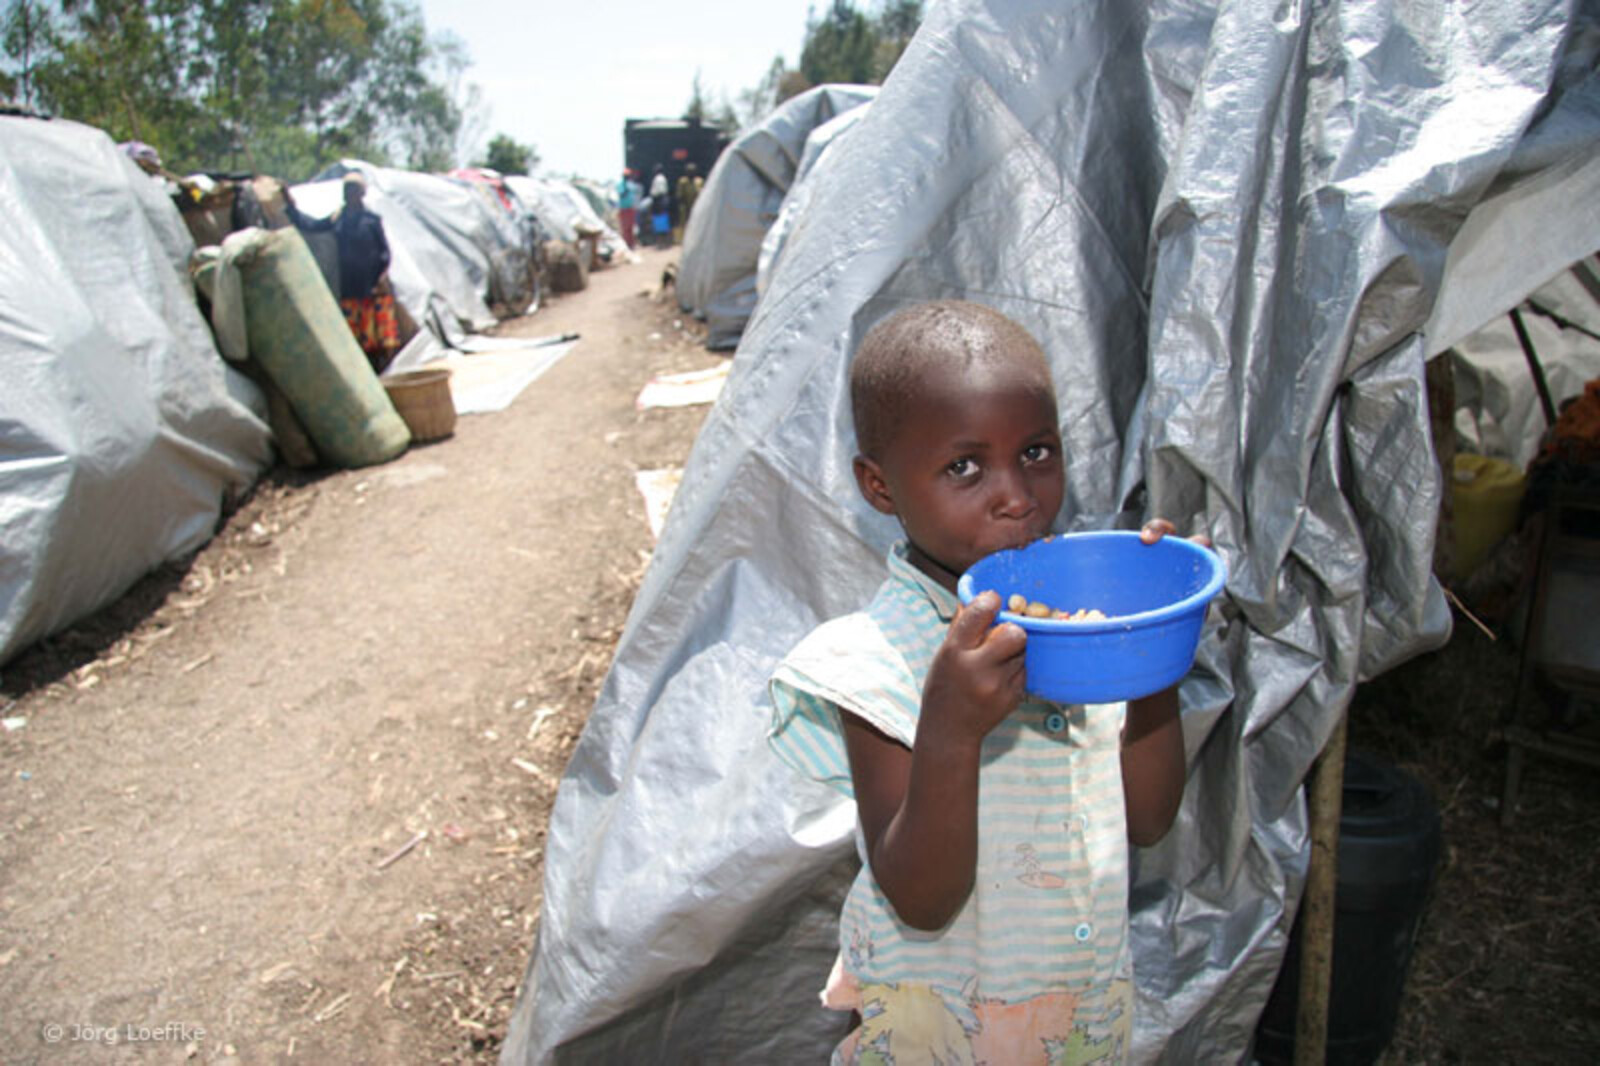 Das Kinderhilfswerk Global Care kümmert sich in Äthiopien um die Versorgung der Flüchtlinge. Für die Flüchtlinge ohne Unterkunft stellt die Organisation Zelte bereit.